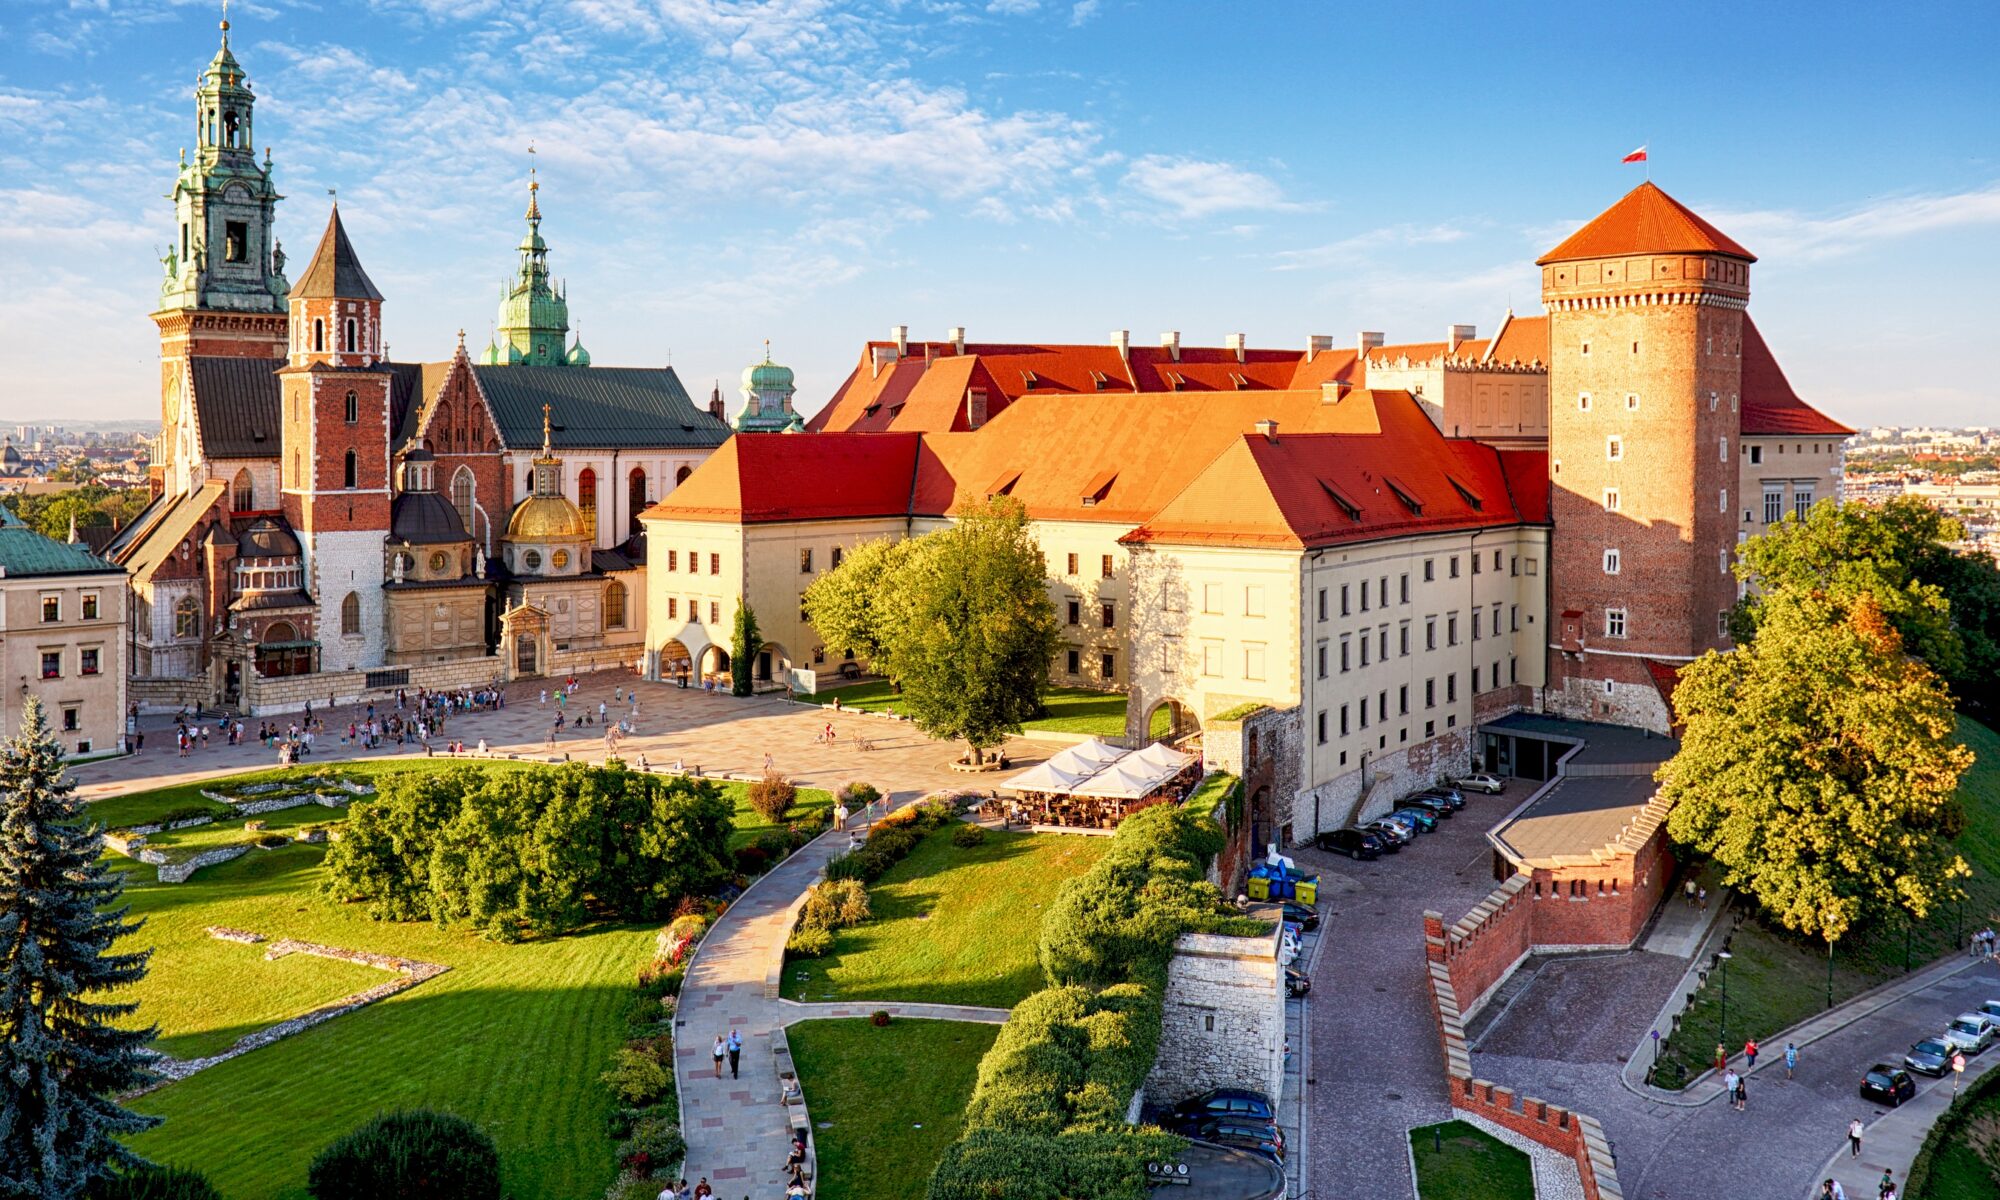 Hotels in Krakow Poland